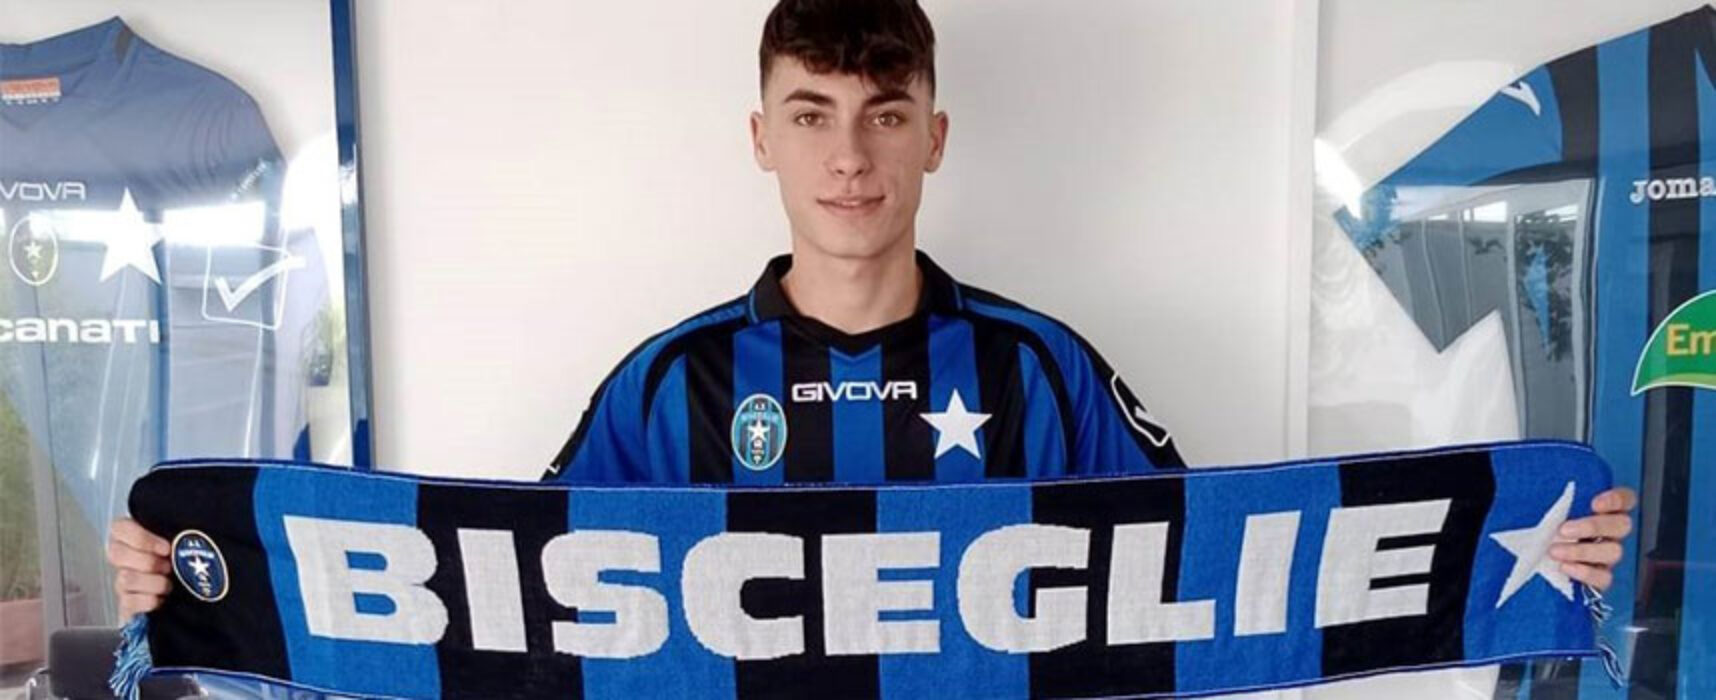 Bisceglie, acquistato il giovane attaccante Mastropietro: “In Puglia con forti motivazioni”